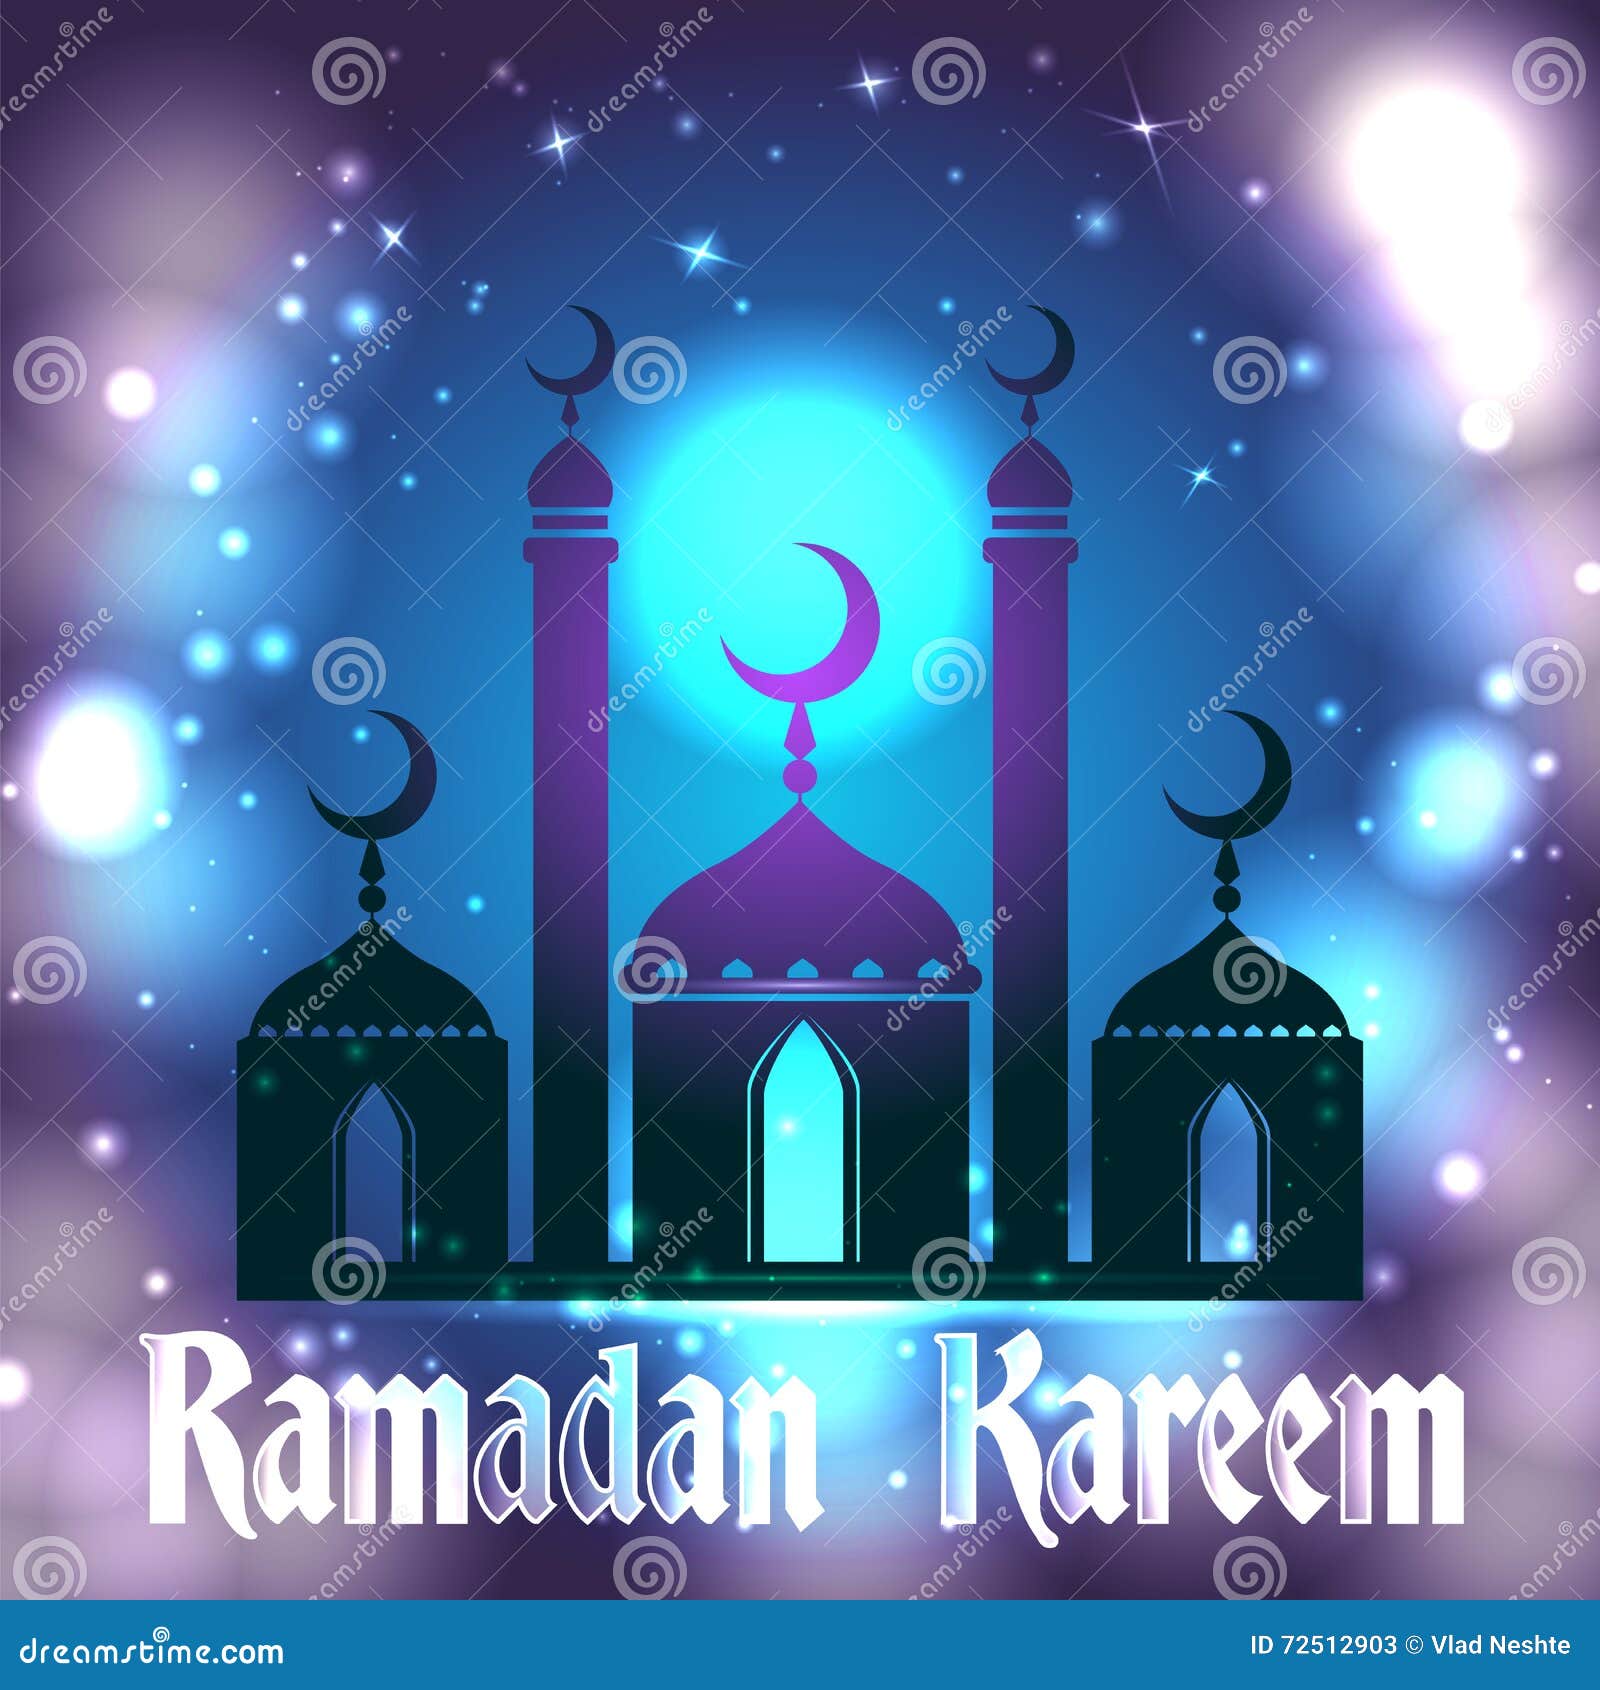 Поздравление с рамаданом на чеченском. Поздравление с наступлением Рамадана. Открытки дизайнерские на Рамадан. Рамадан поздравление фон. Рамадан поздравления красивые.